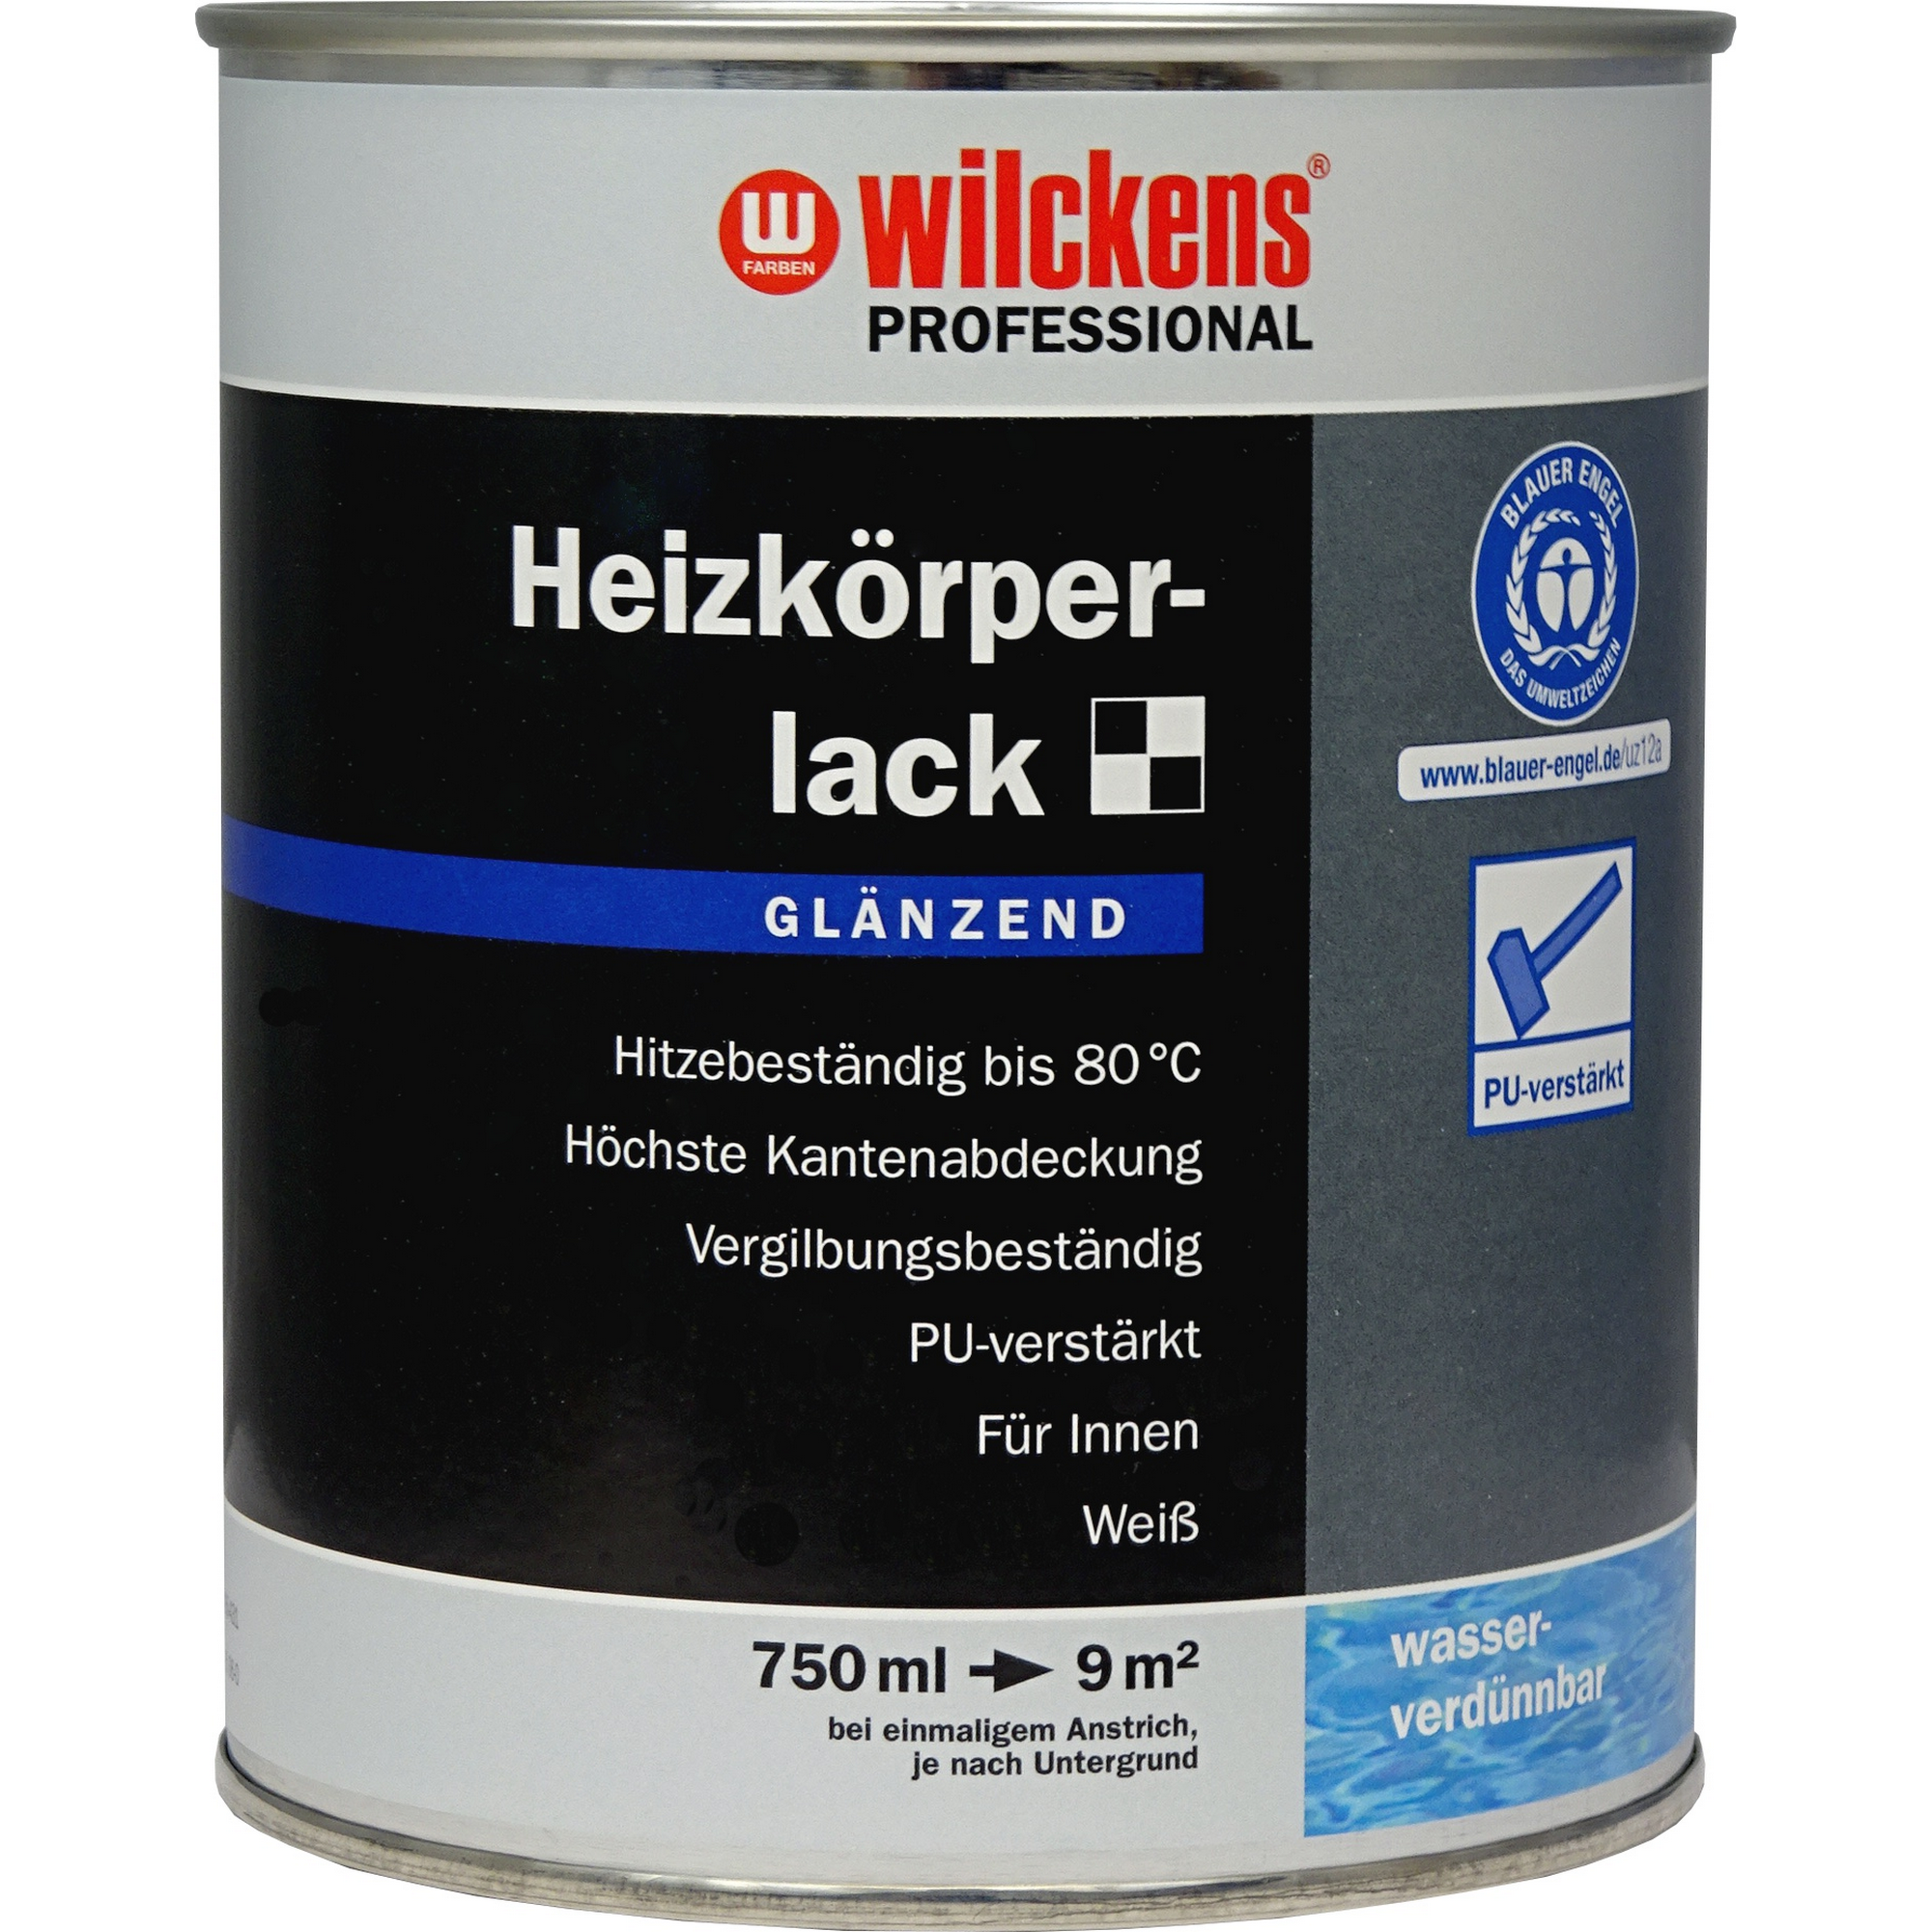 Heizkörperlack 'Professional' weiß glänzend 750 ml + product picture